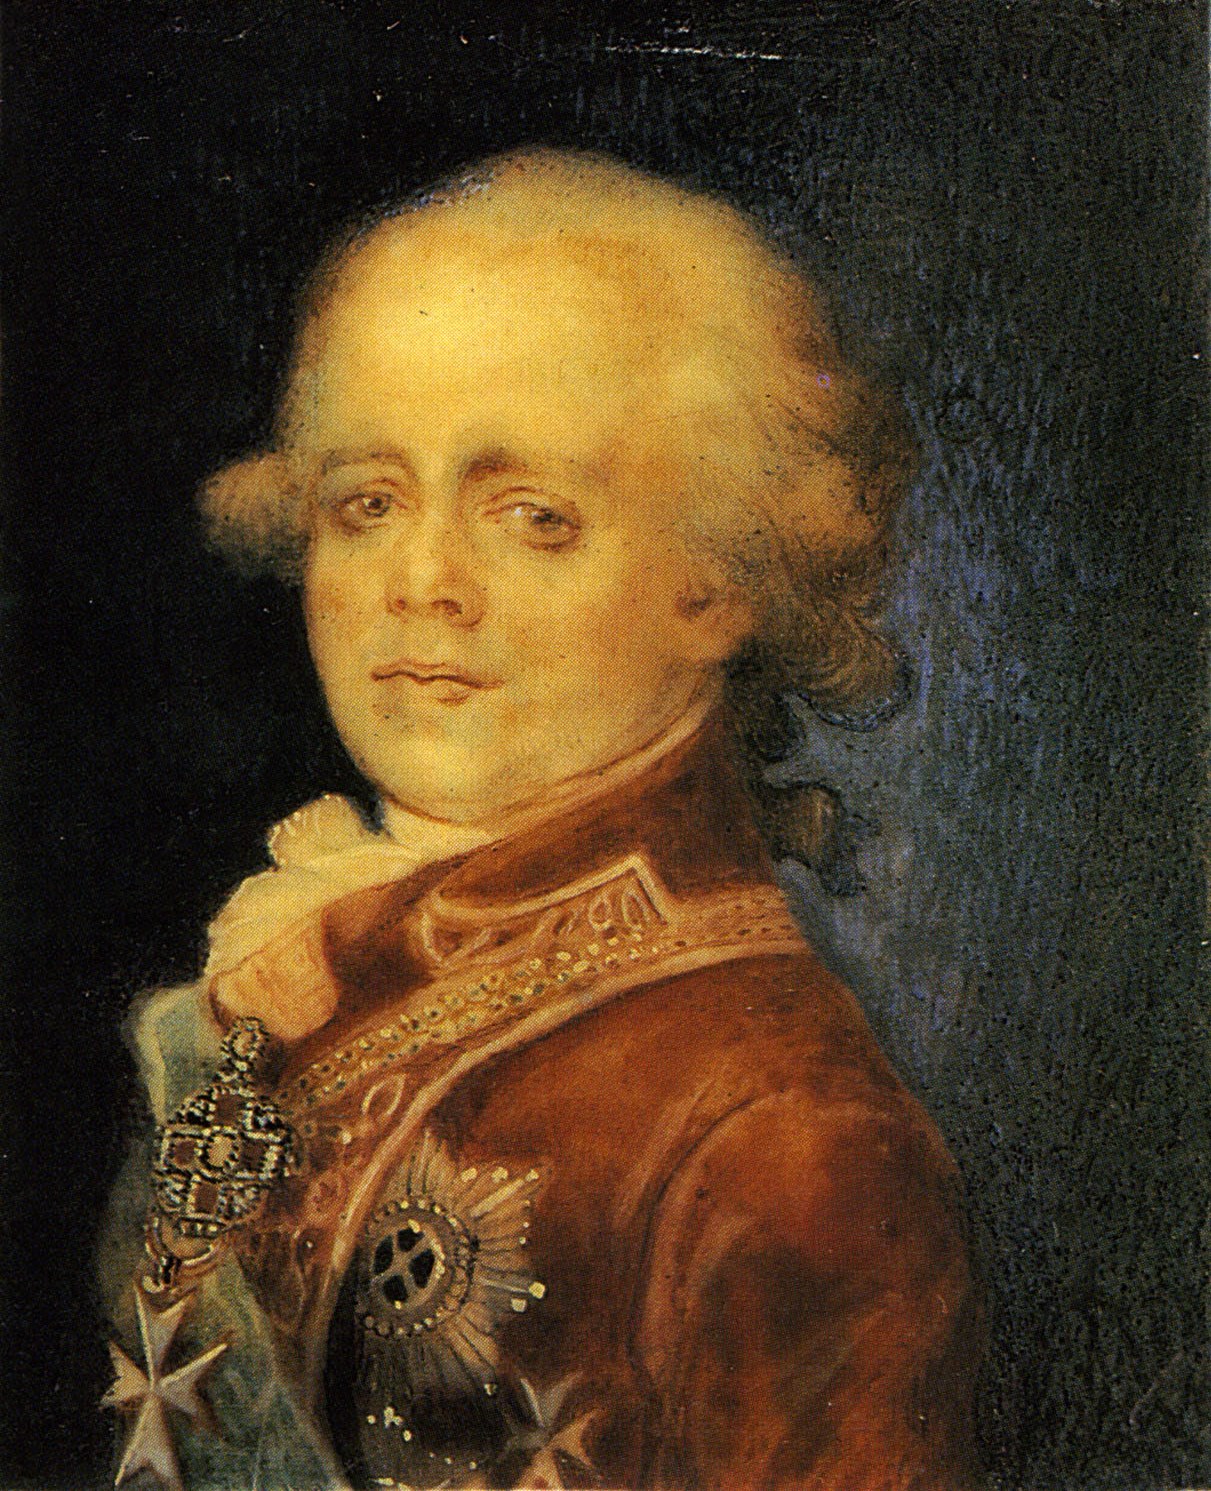 Неизвестный художник. "Портрет Павла I". Не ранее 1798. Государственная Третьяковская галерея.